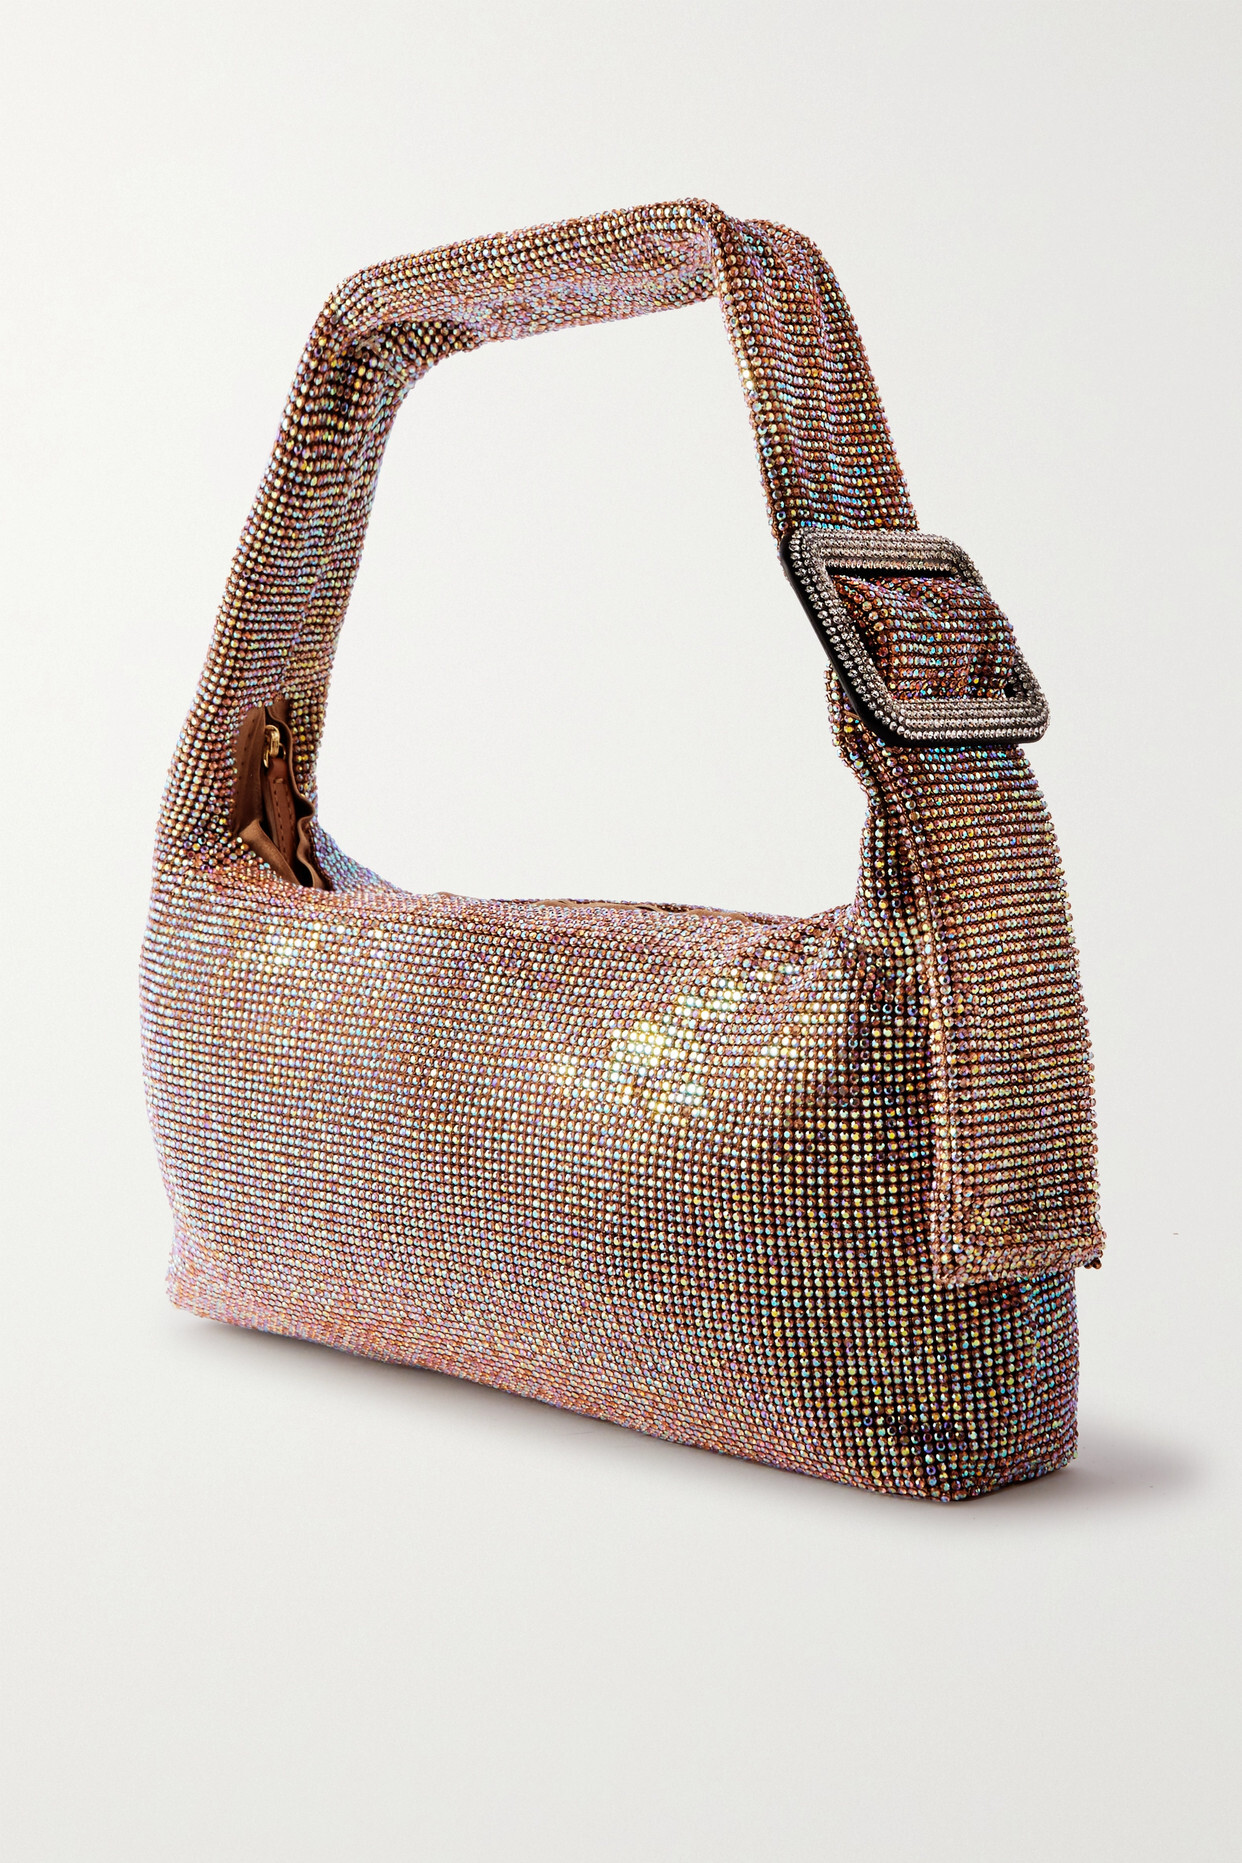 Benedetta Bruzziches - Pina Bausch Crystal-embellished Satin Shoulder Bag - Rose gold